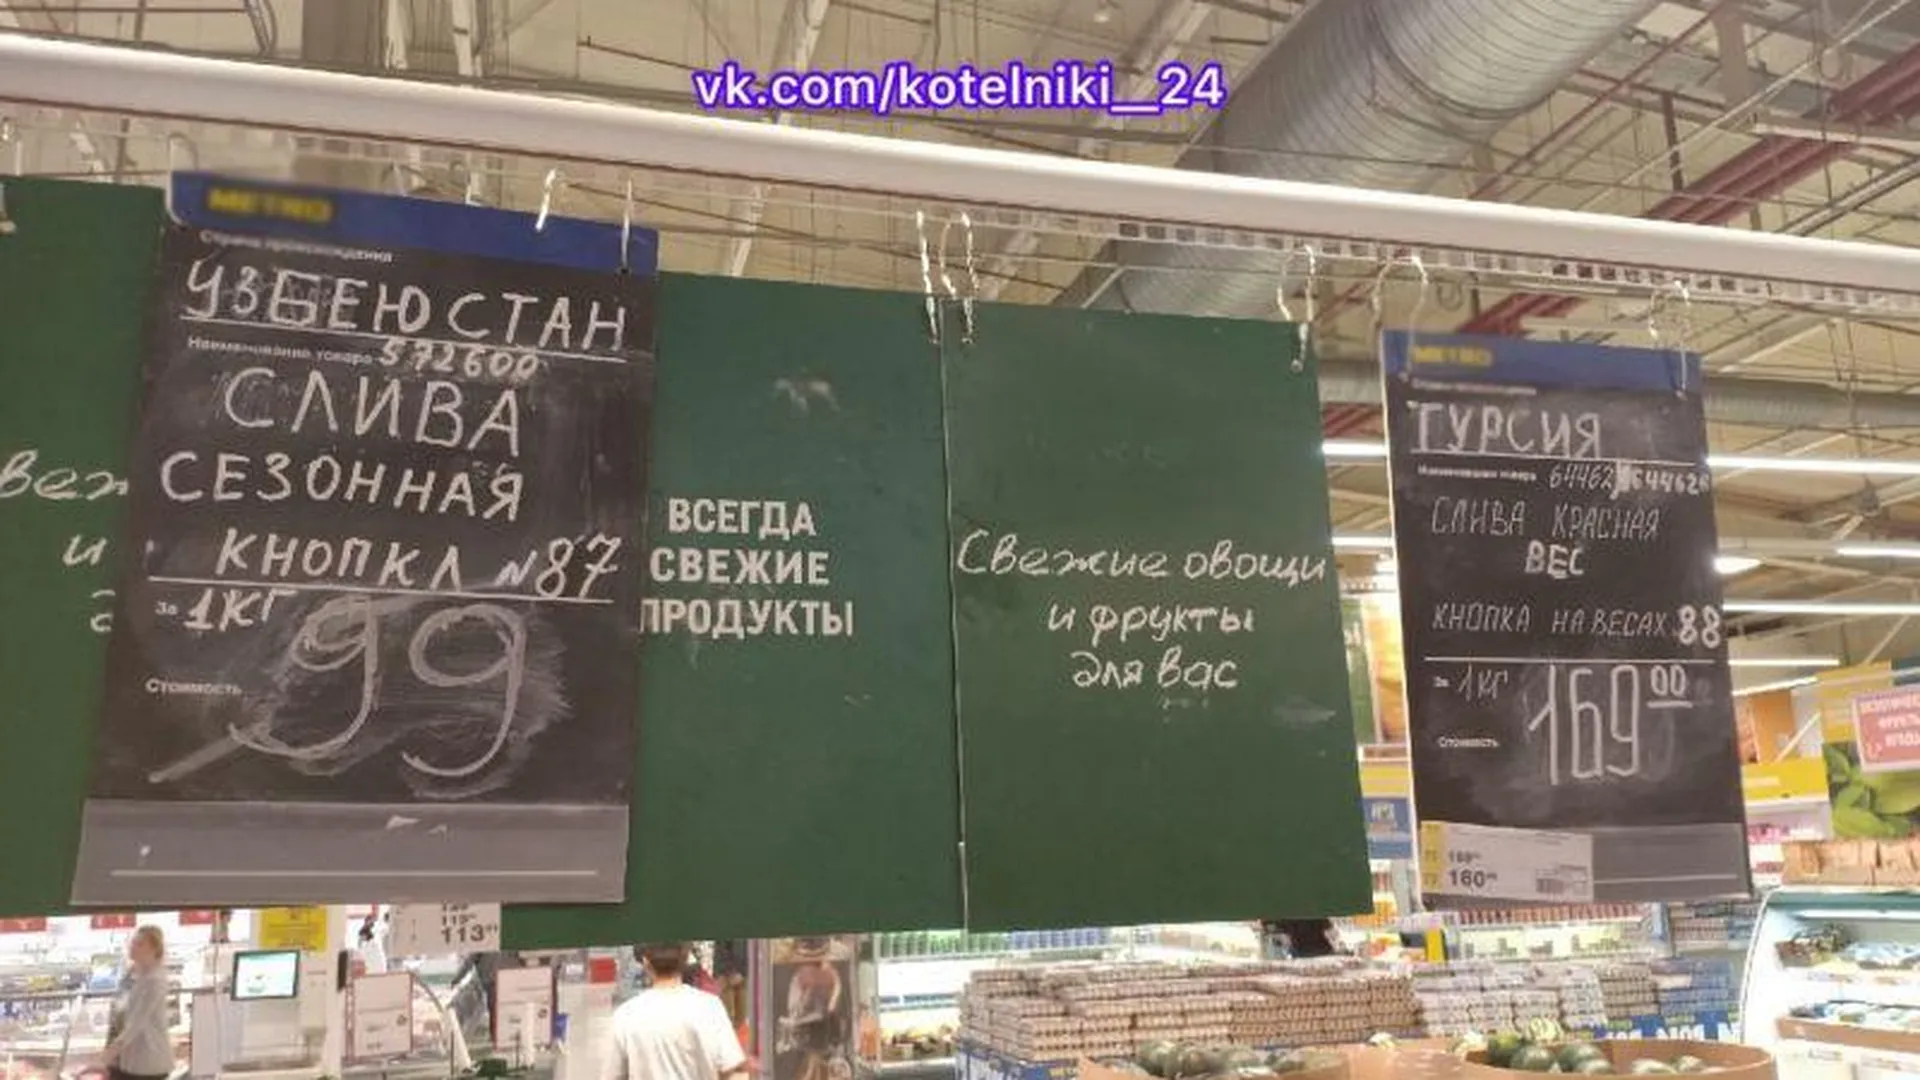 Жителей Котельников рассмешили ошибки на ценниках в гипермаркете